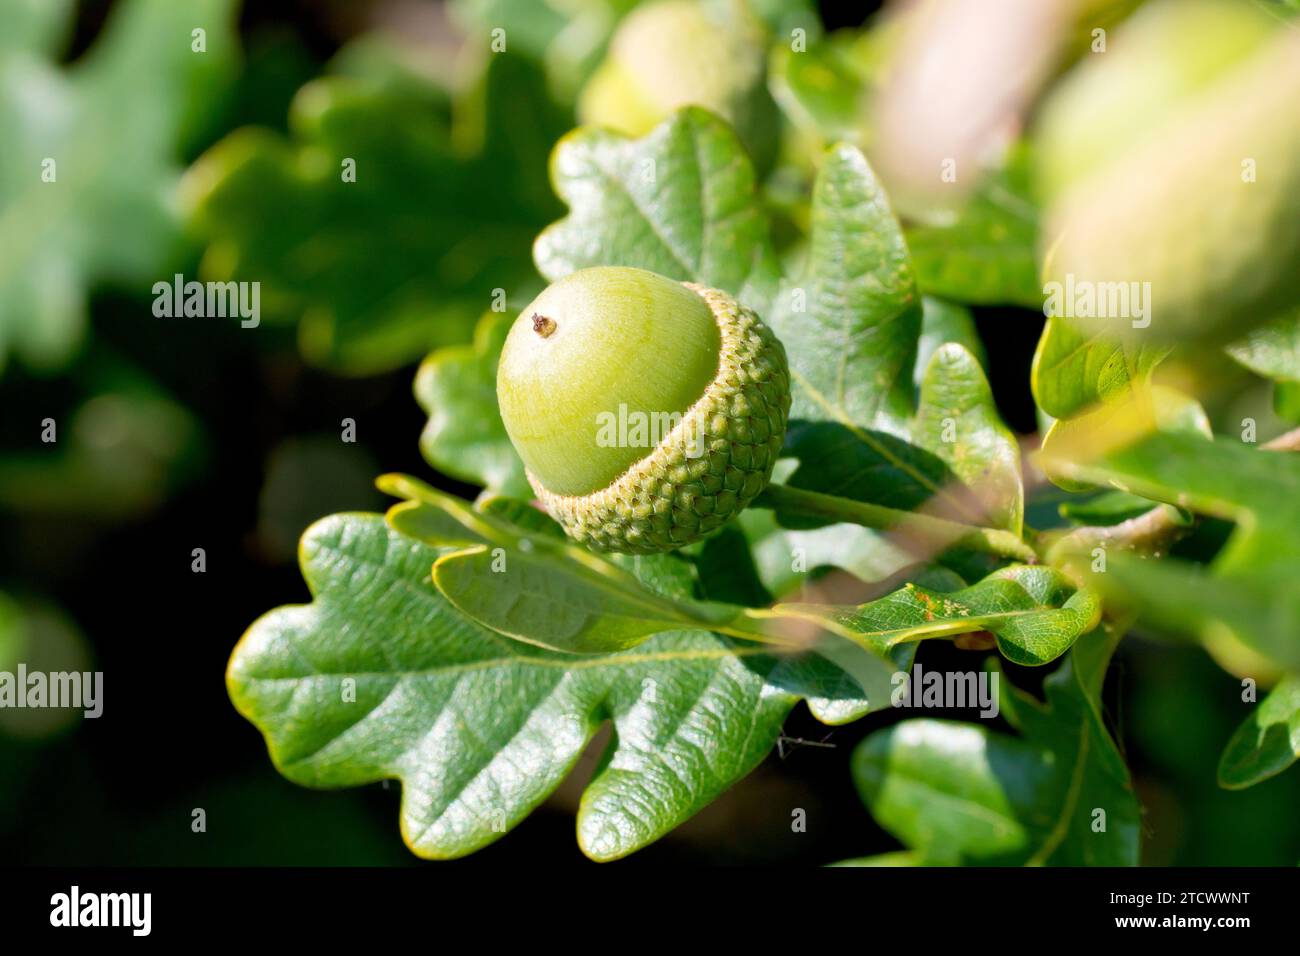 Quercia inglese o quercia peduncolata (quercus robur), primo piano che mostra una singola ghianda o frutto che si sviluppa tra le foglie dell'albero. Foto Stock